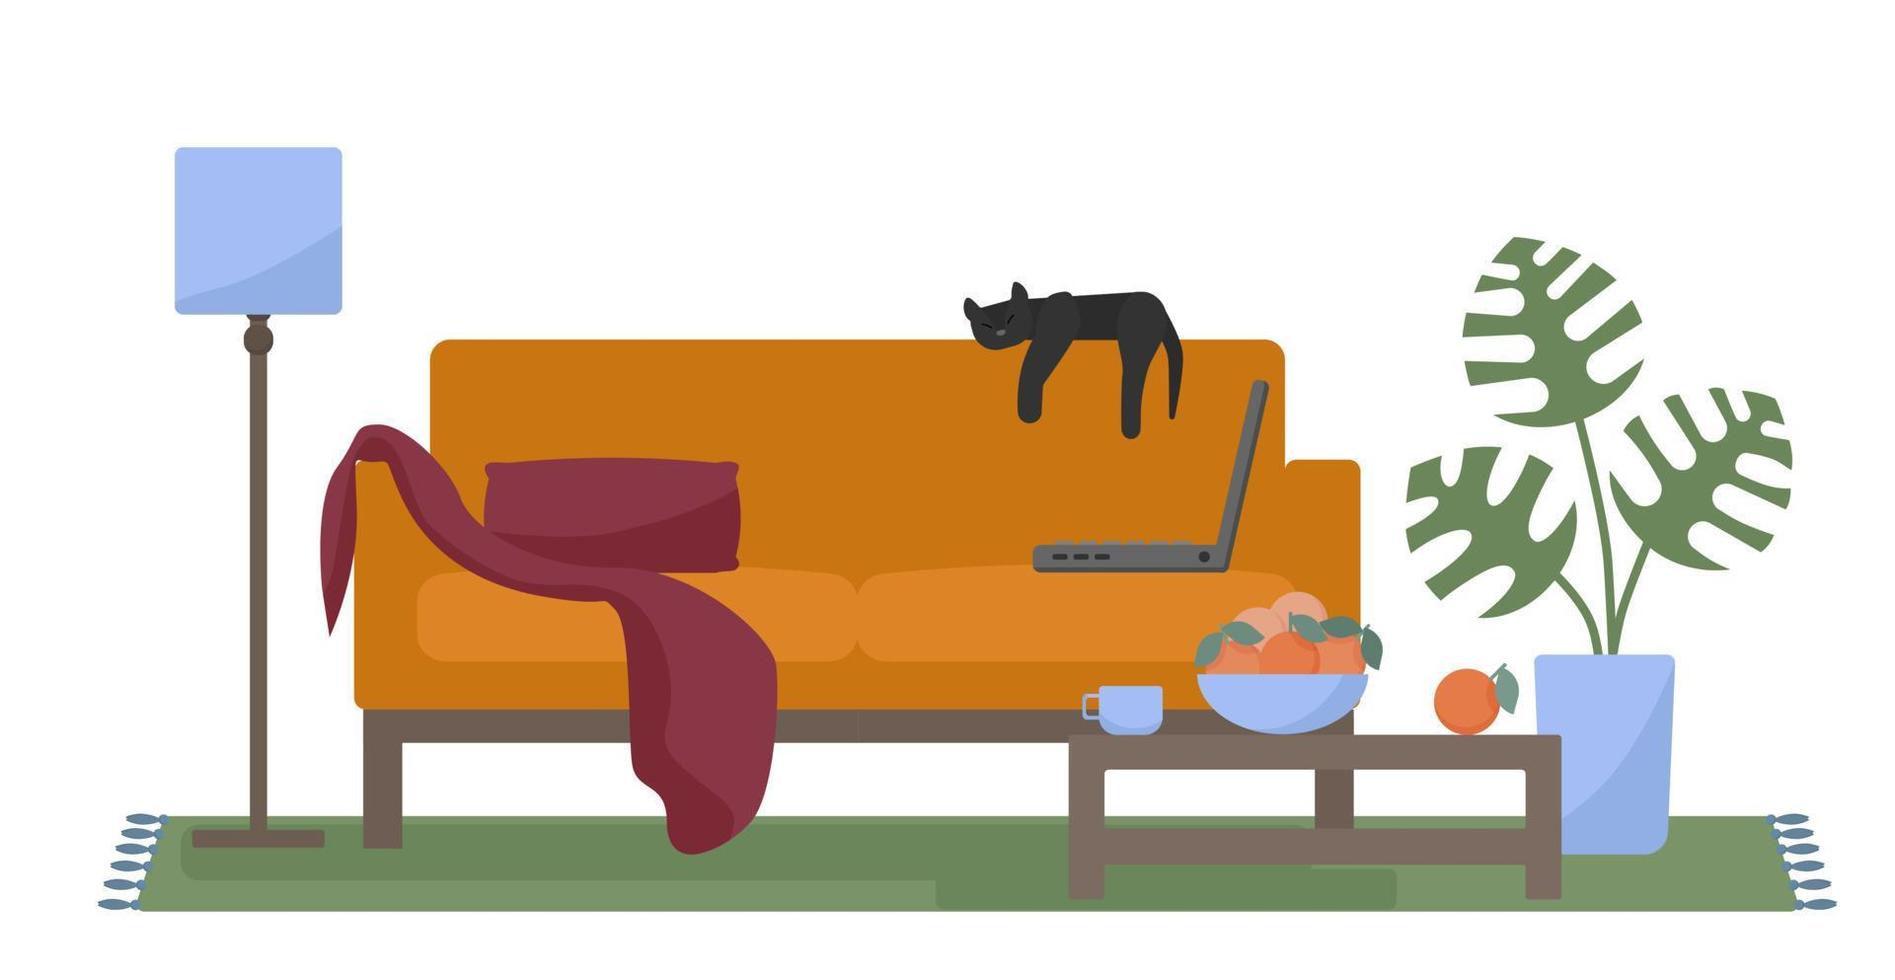 Lounge-Bereich oder Wohnzimmer-Interieur mit einem hellen, gemütlichen Sofa, einer schlafenden Katze, einem Laptop, einer Heimpflanze, einer Lampe, einem Teppich und einem Couchtisch. Relaxzone oder Homeoffice. isoliert auf weißer vektorillustration. vektor